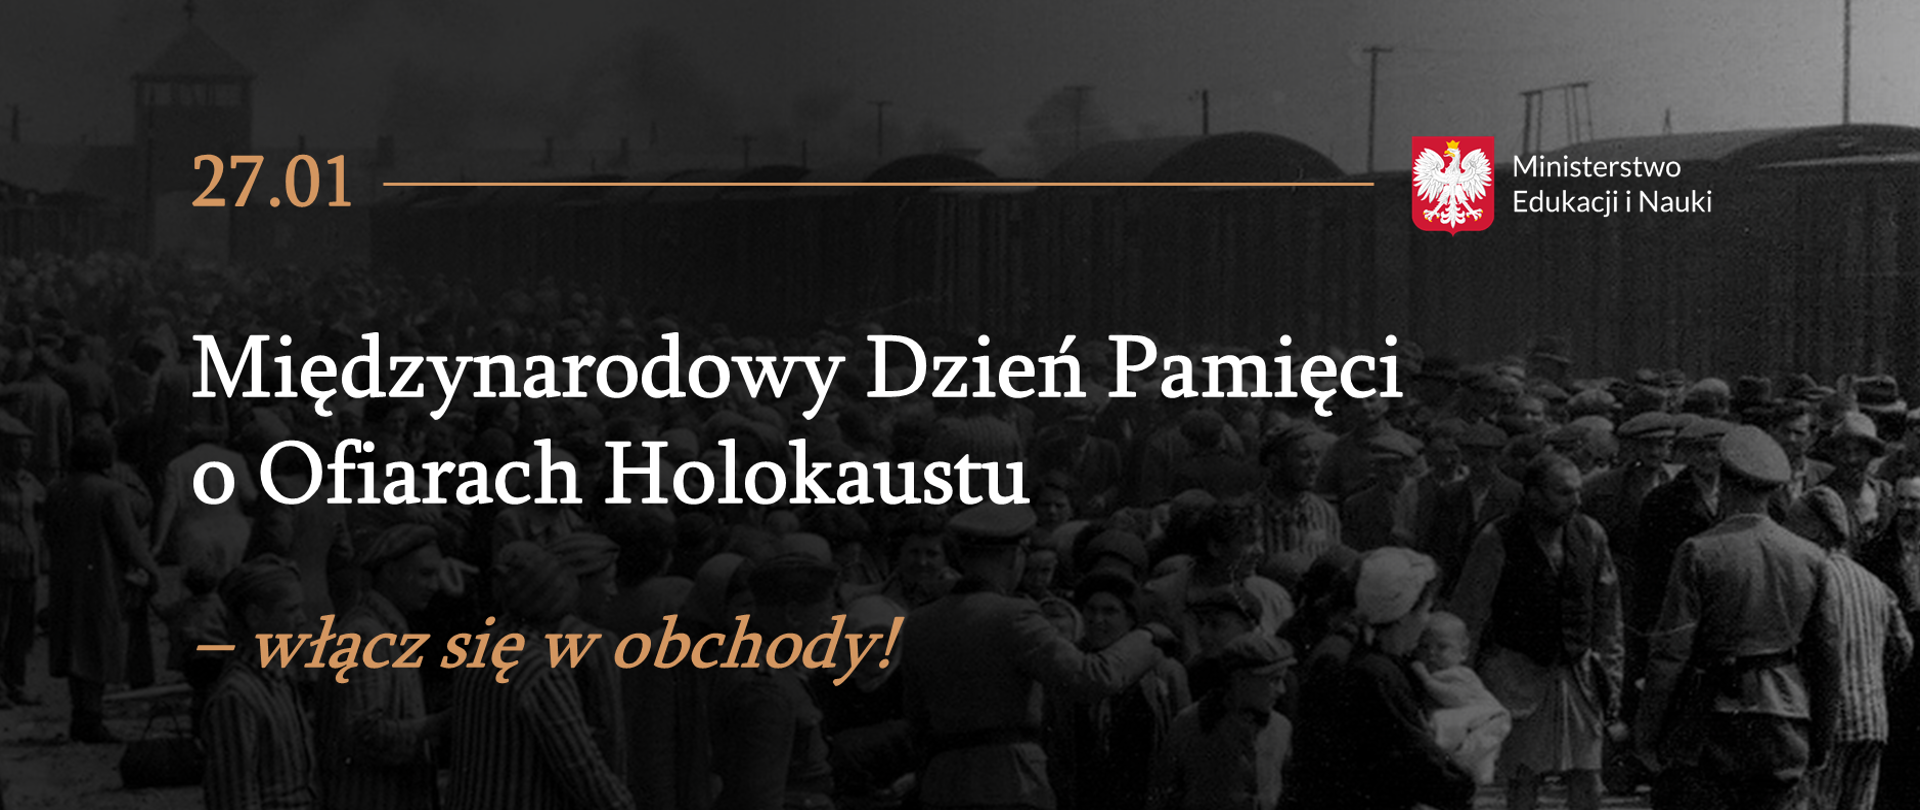 Archiwalne zdjęcie tłumu ludzi w obozie koncentracyjnym. Na zdjęciu tekst: "27 stycznia, Międzynarodowy Dzień Pamięci o Ofiarach Holokaustu – włącz się w obchody!"